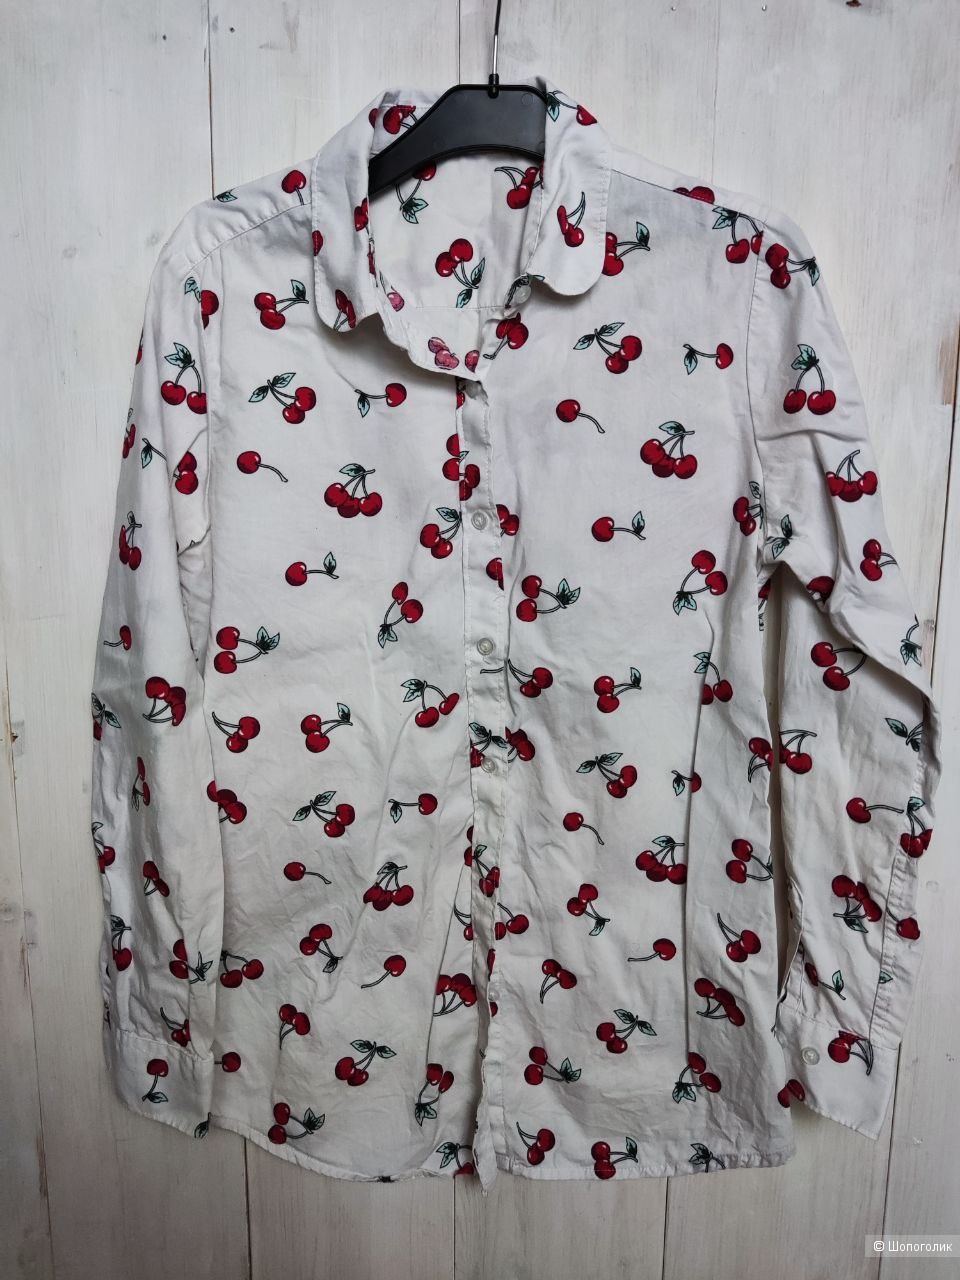 Рубашки сетом HM, Zara (5 шт.)